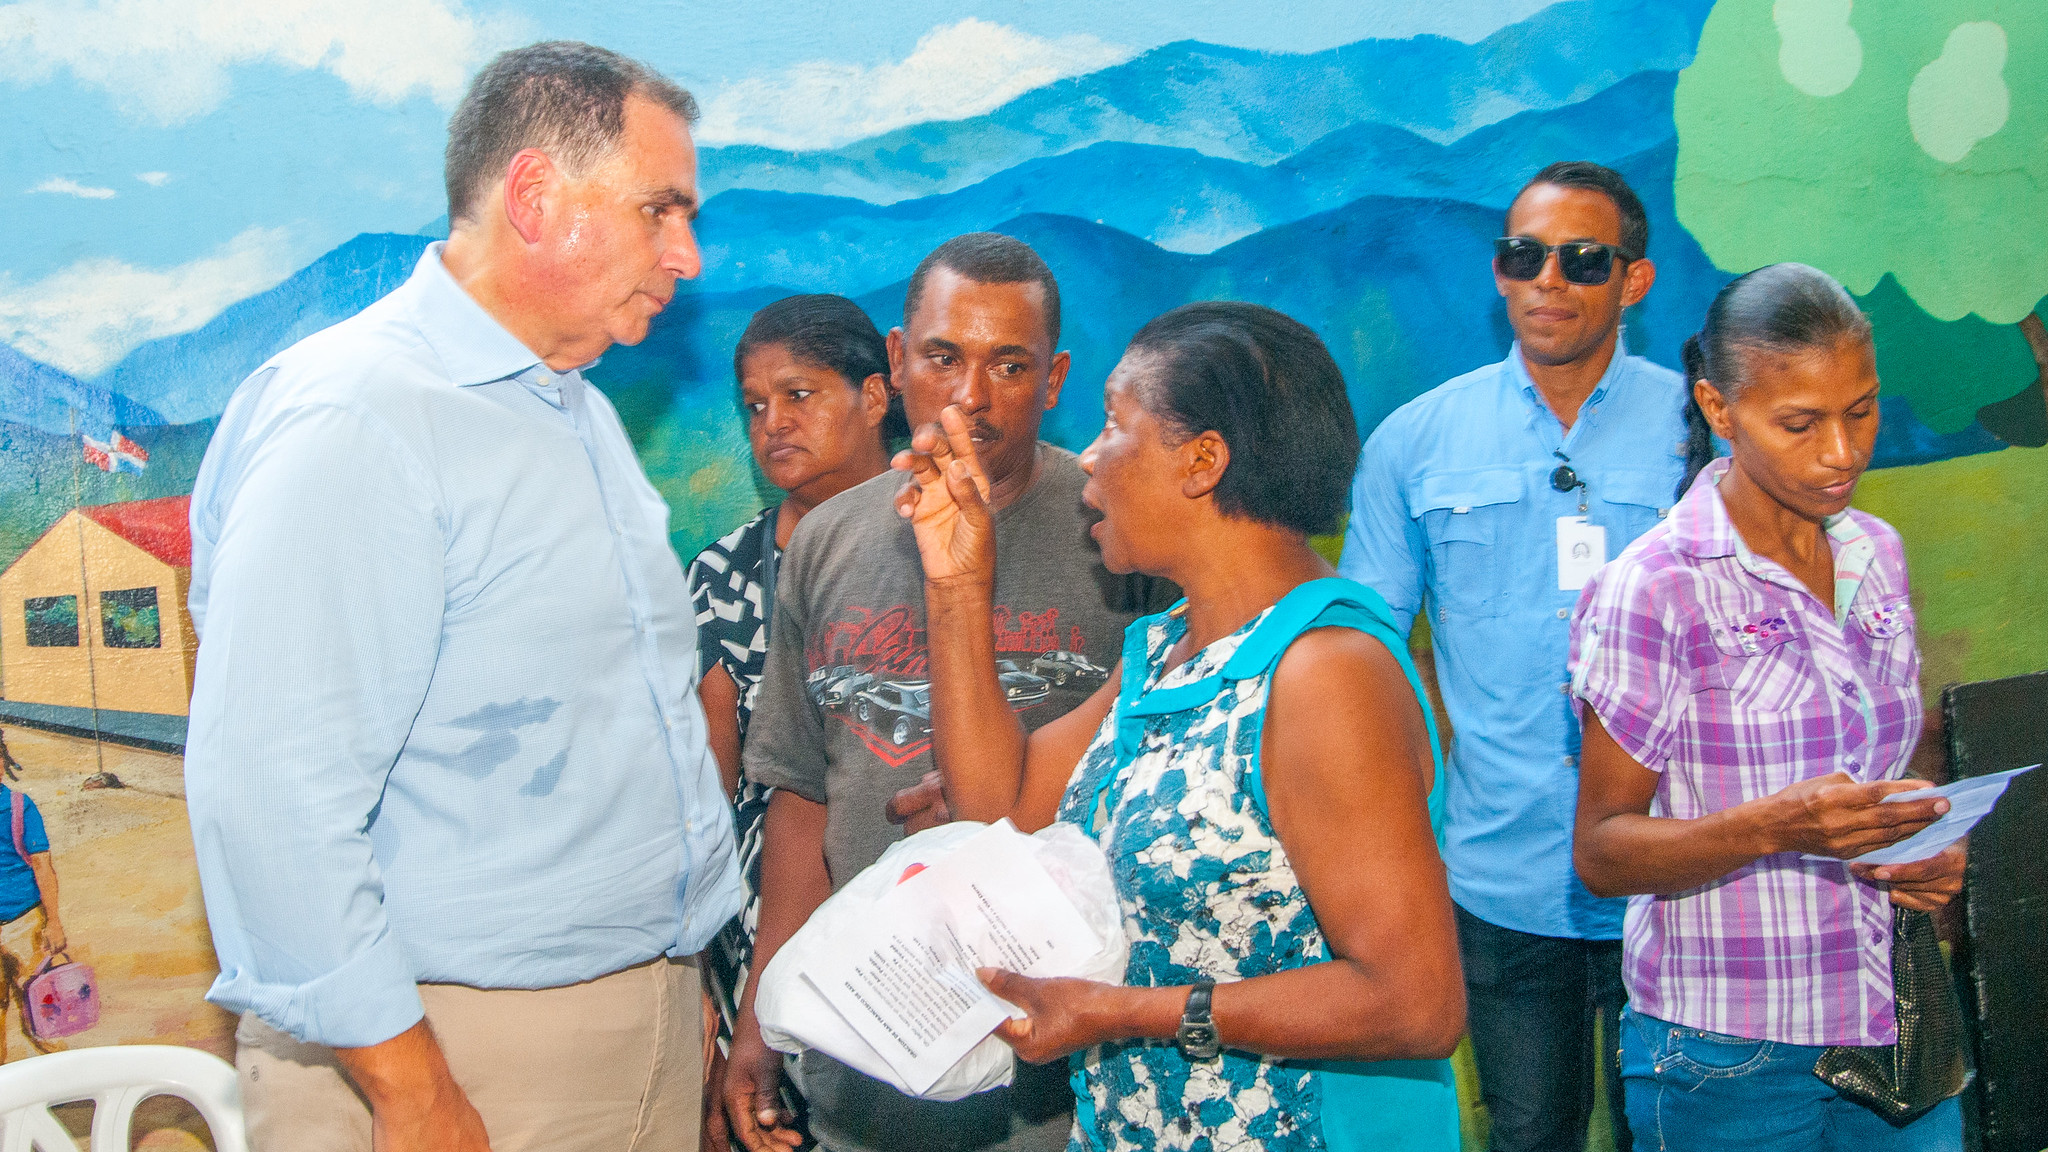 REPÚBLICA DOMINICANA: Nuevo Domingo Savio: URBE se reúne con moradores de La Ciénaga y acuerdan continuar los traslados de familias